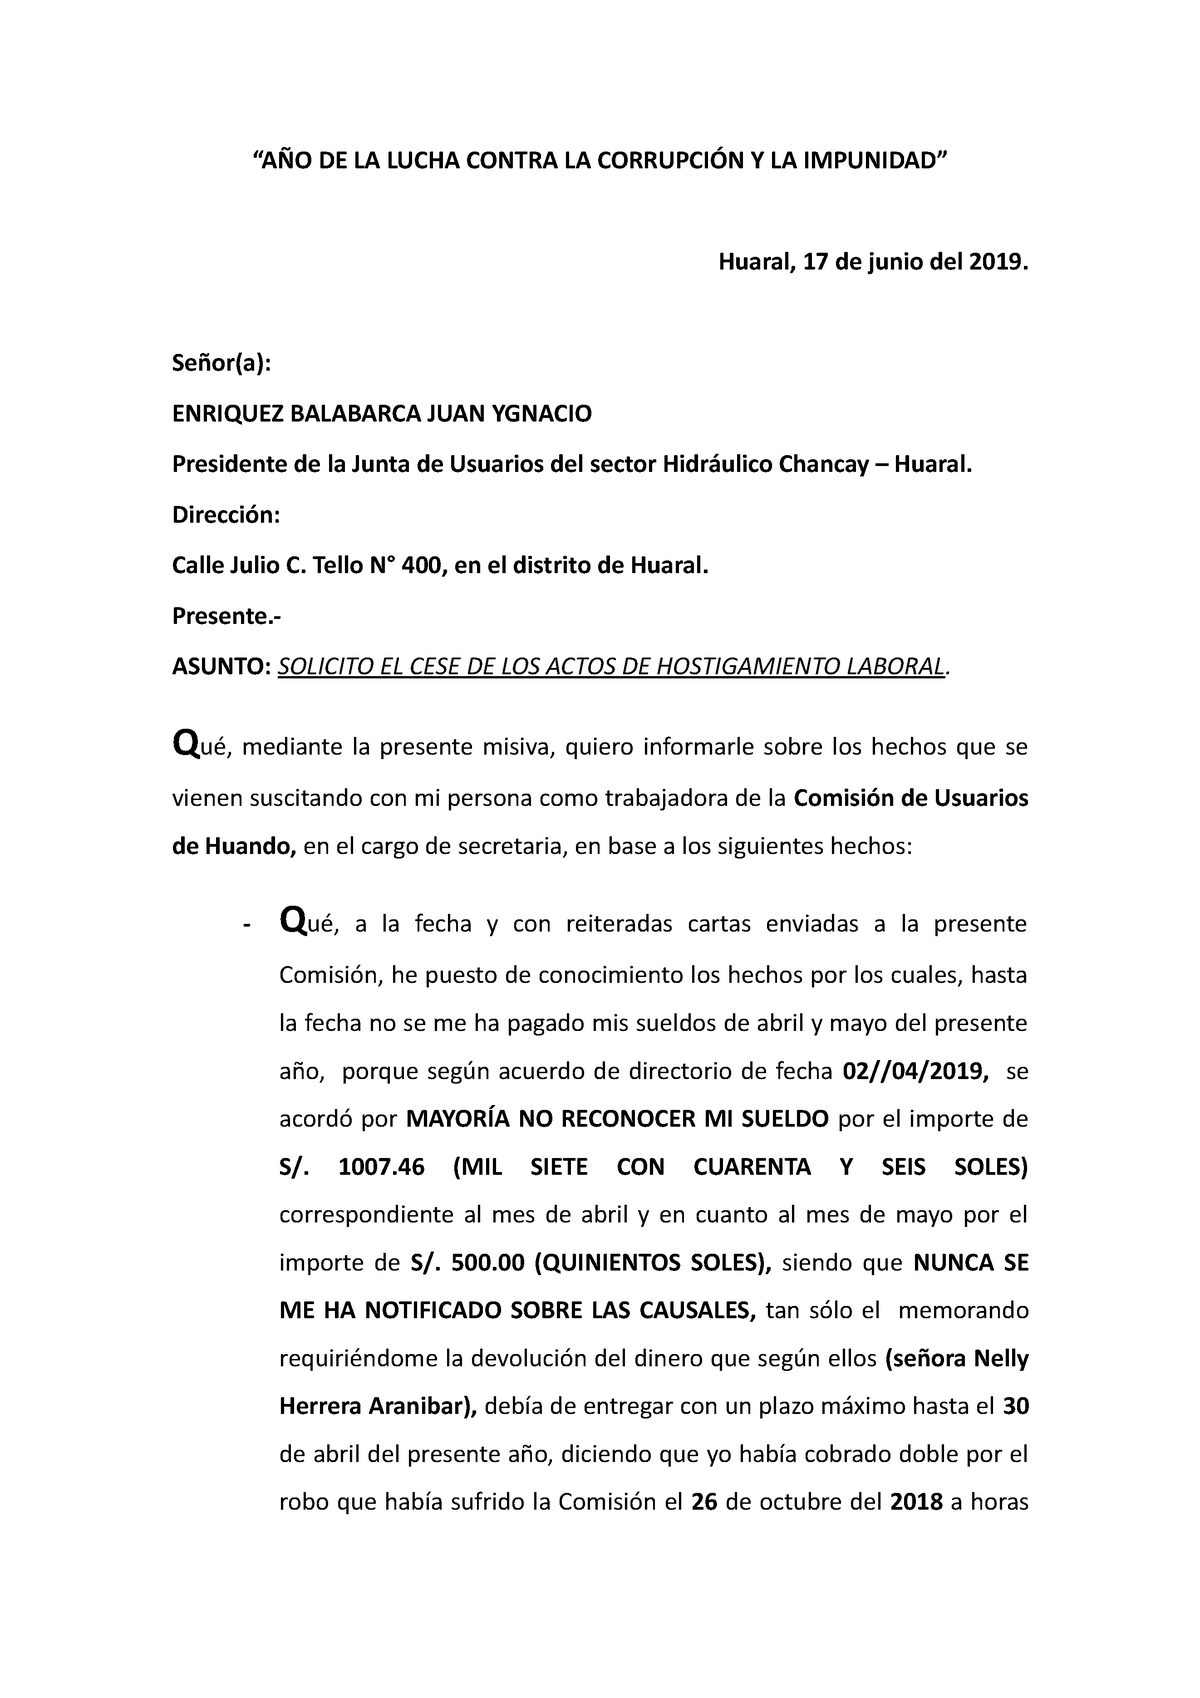 Carta Cese de hostigamiento laboral Angélica Loli - “AÑO DE LA LUCHA CONTRA  LA CORRUPCIÓN Y LA - Studocu